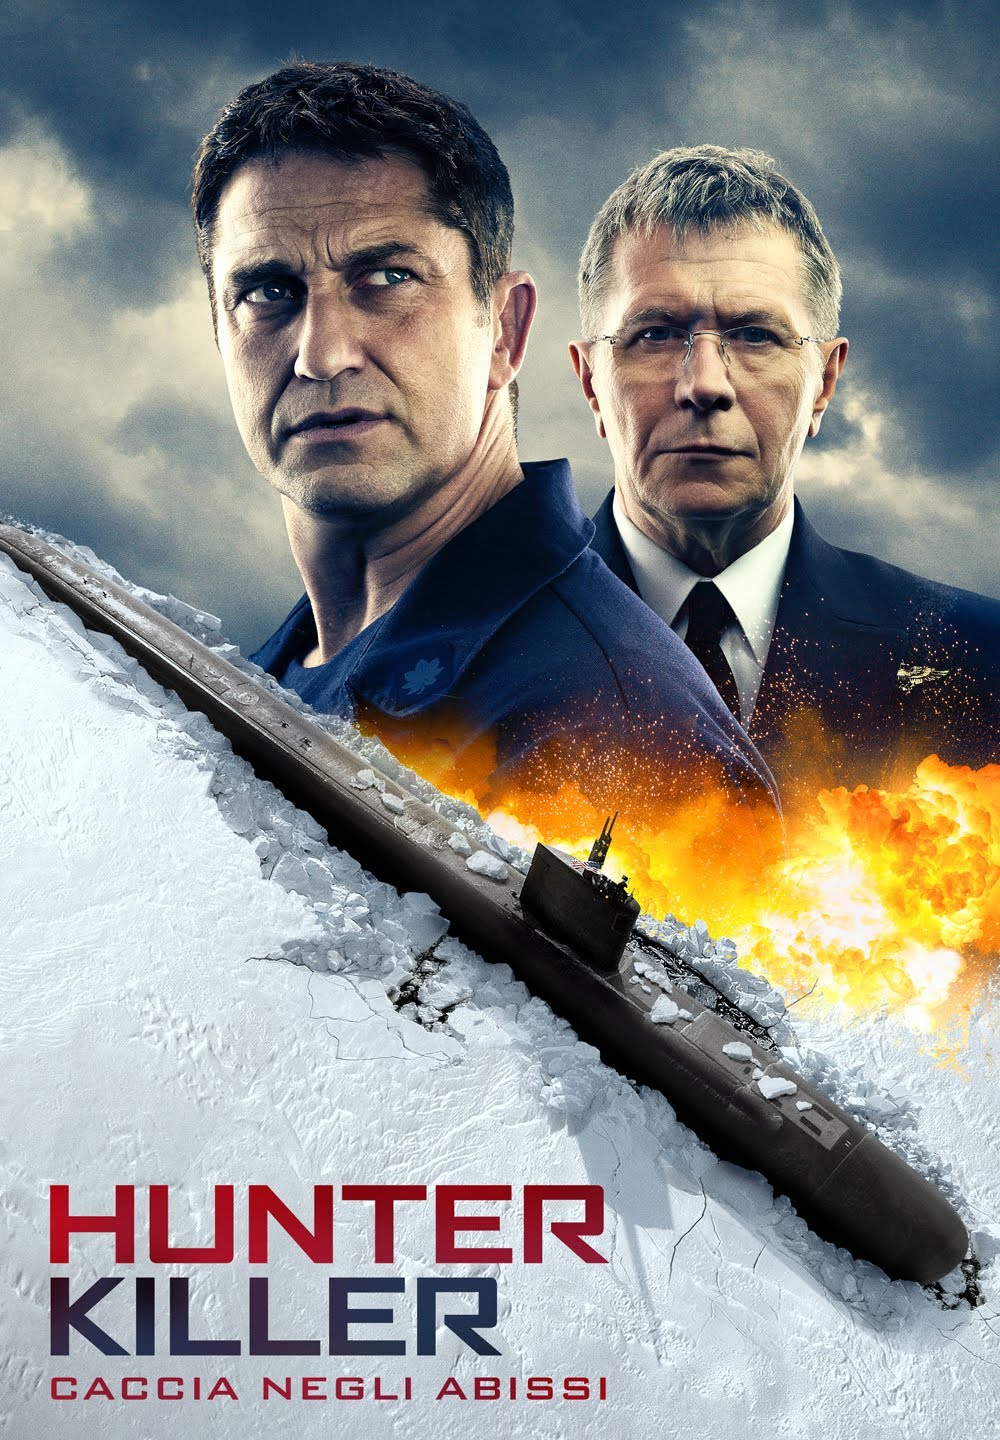 Hunter Killer – Caccia negli abissi [HD] (2018)